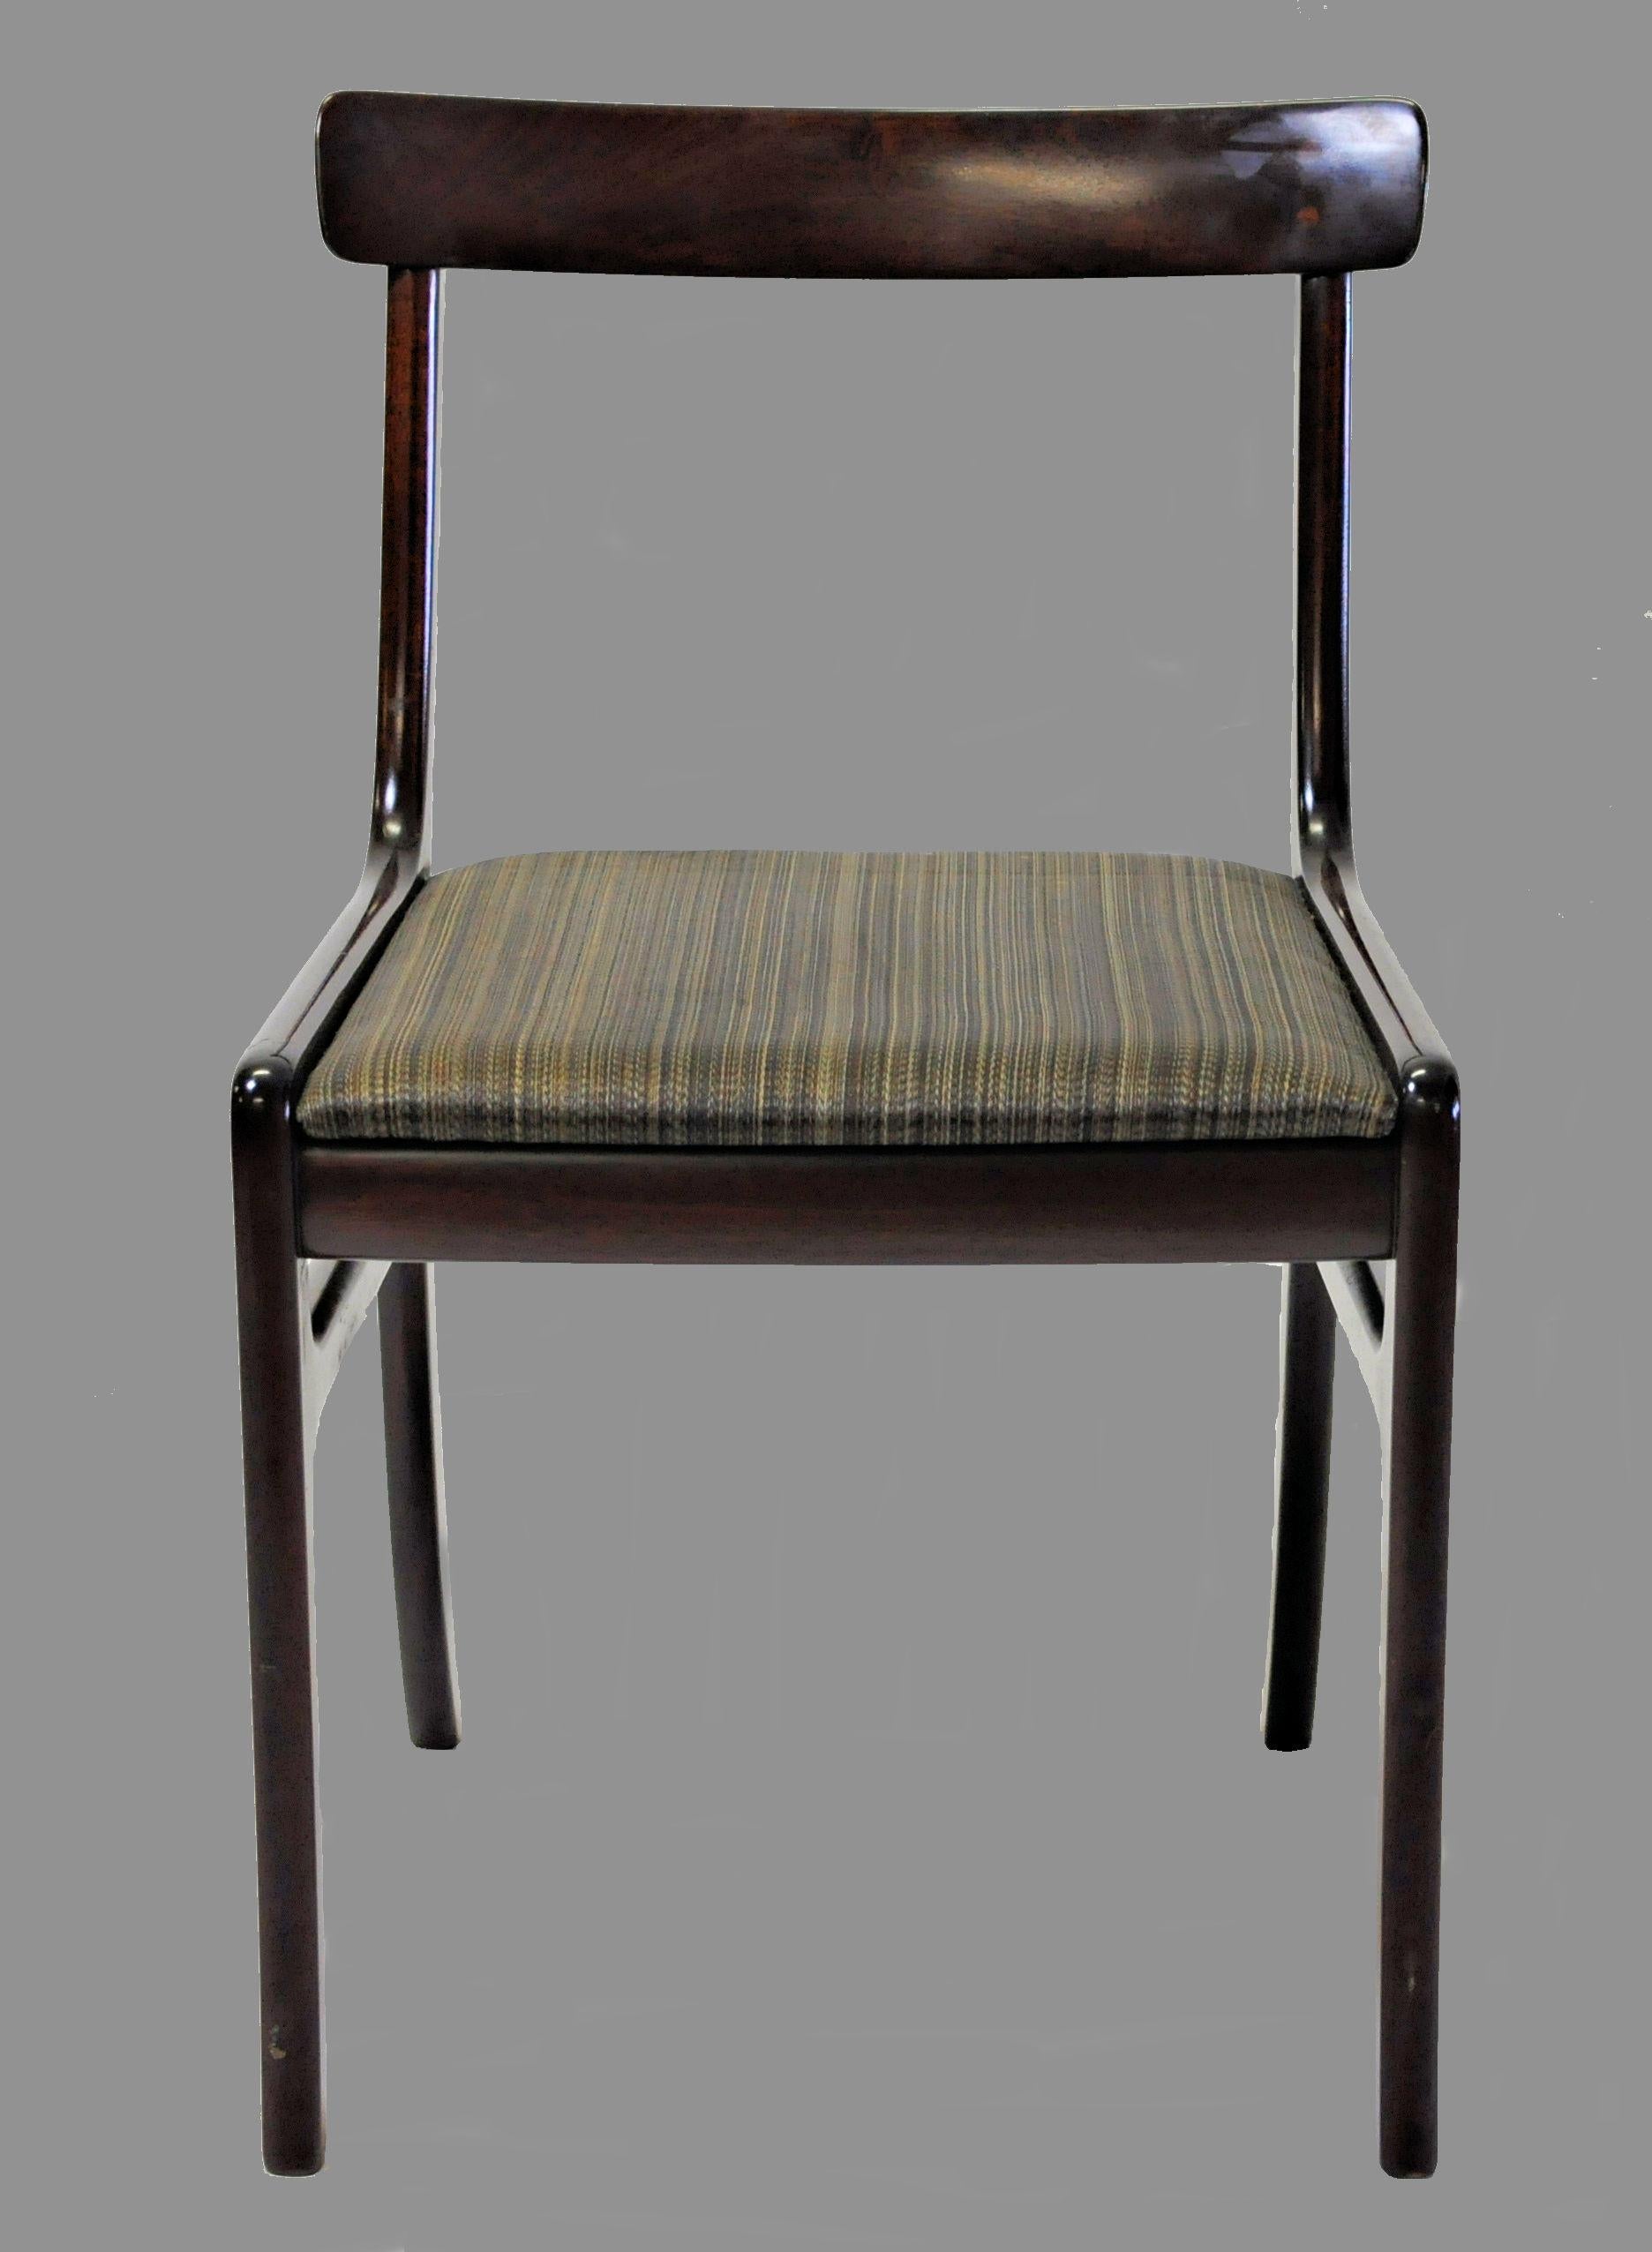 Cet ensemble de 12 chaises de salle à manger Rungstedlund en acajou, conçues par Ole Wanscher, a été produit dans les années 1960 et 1970 par Poul Jeppesen Furniture. 

Les chaises de salle à manger font partie de la série de meubles de salle à